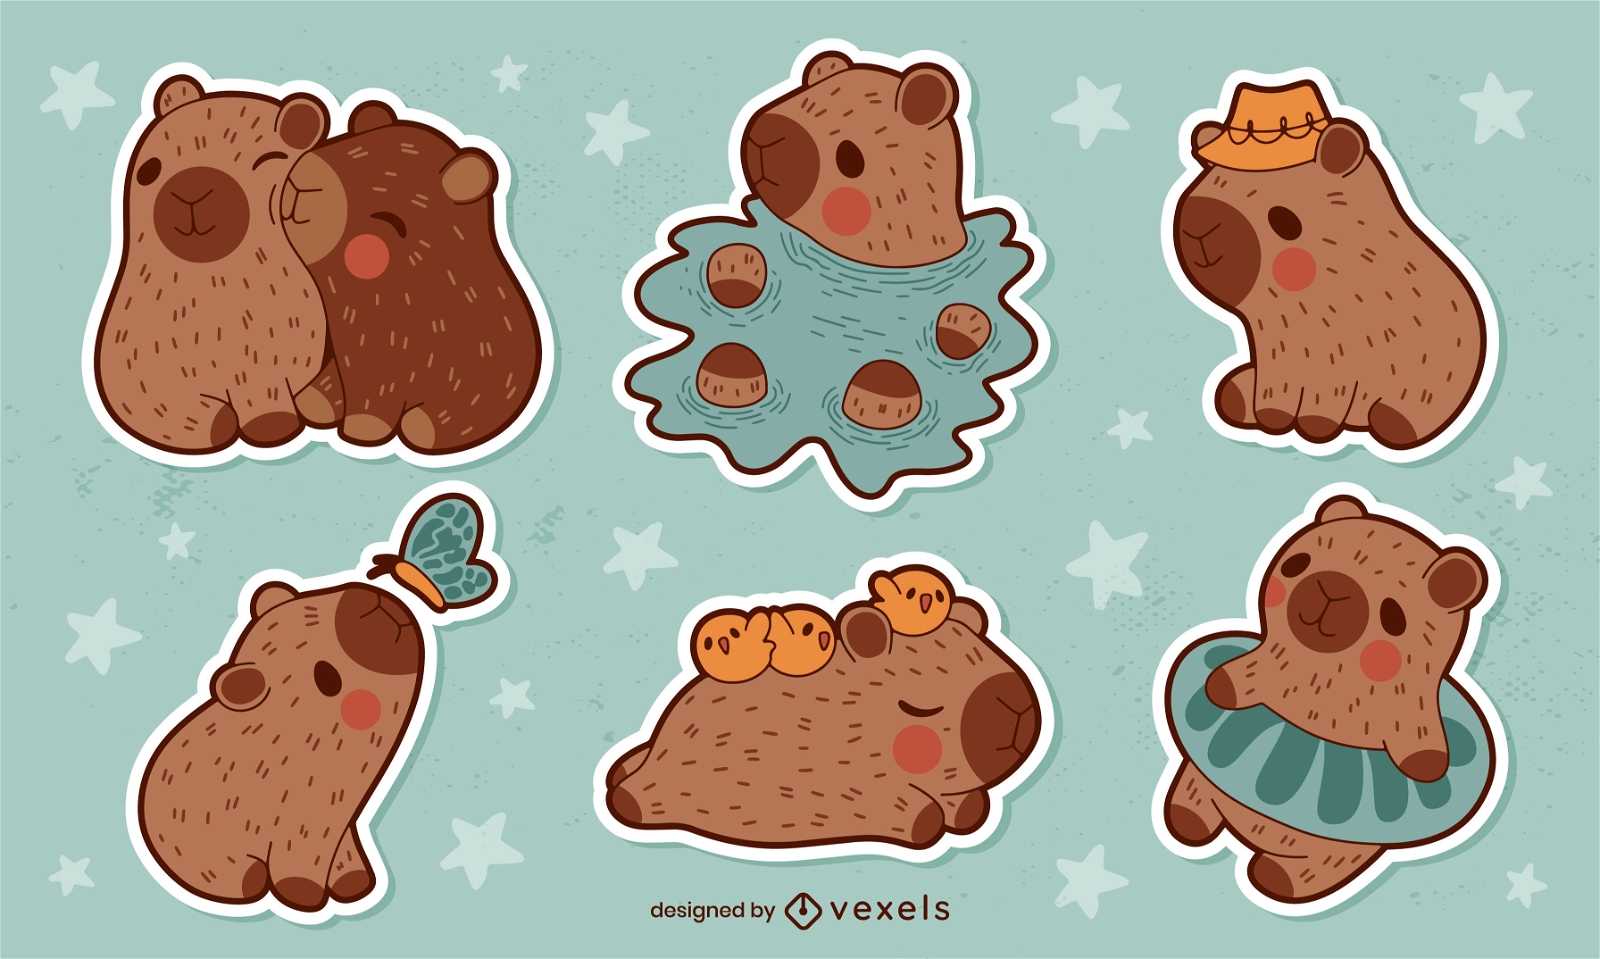 Capybara - Capivara Desenho Kawaii - Free Transparent PNG Clipart